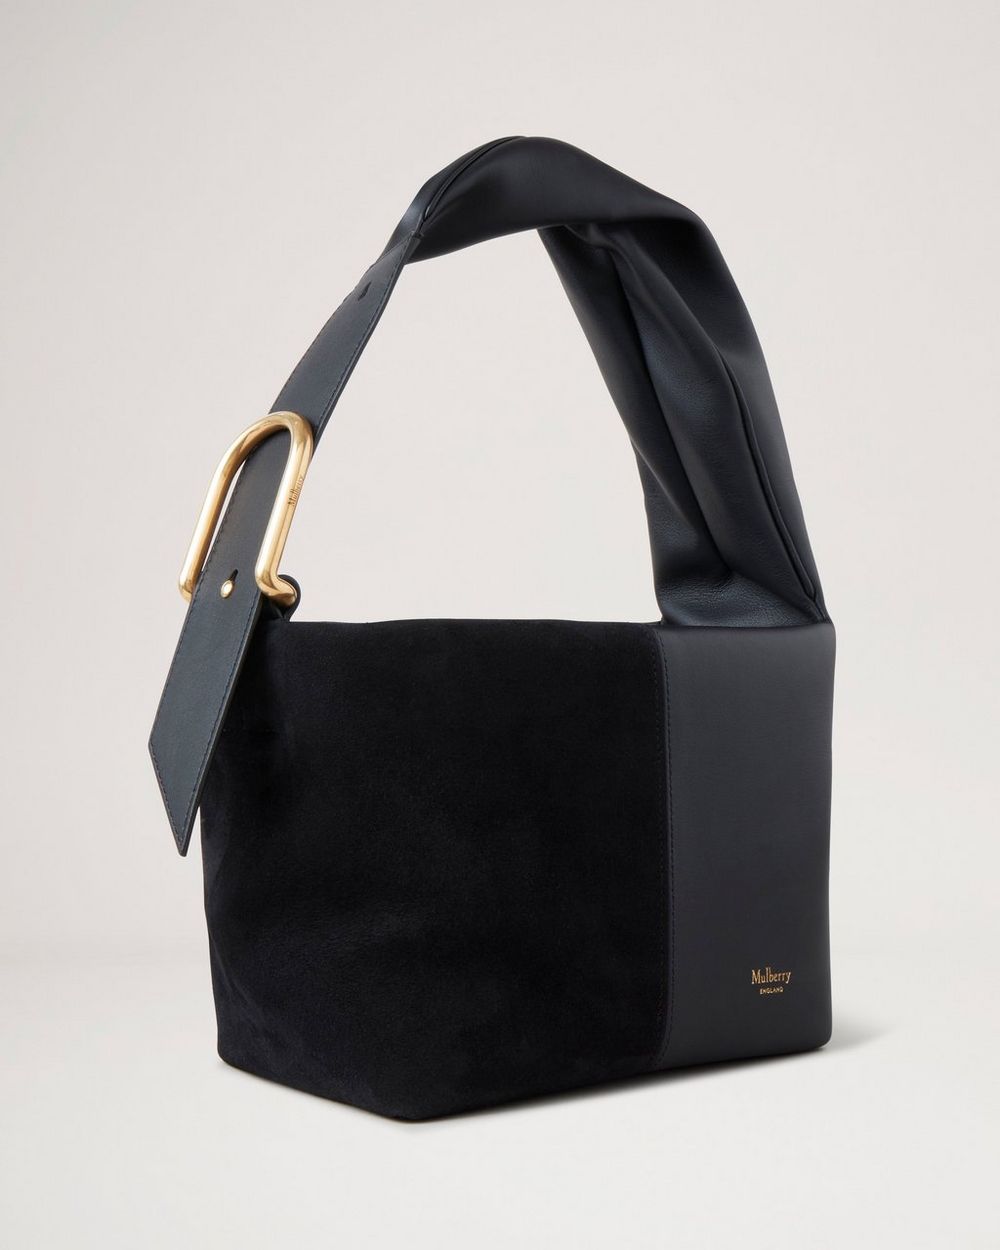 Buy Black Slouchy Shoulder Bag Round Hobo Bag Overnight Bag Online in India  